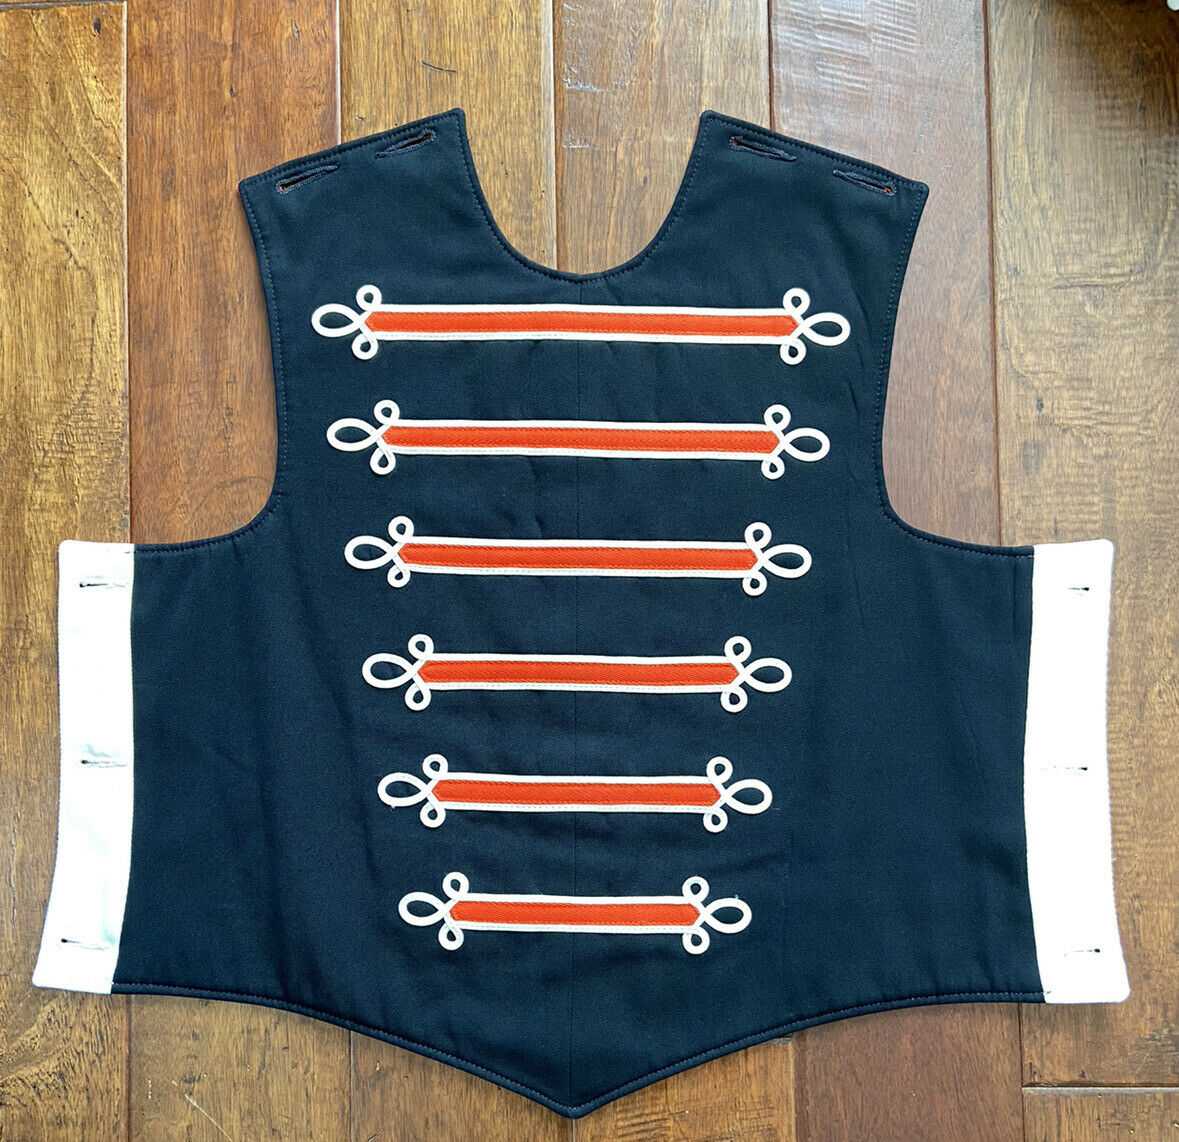 (60) Black, Orange, White Fruhauf Band Uniform Vest Coat Front, Button On Plate